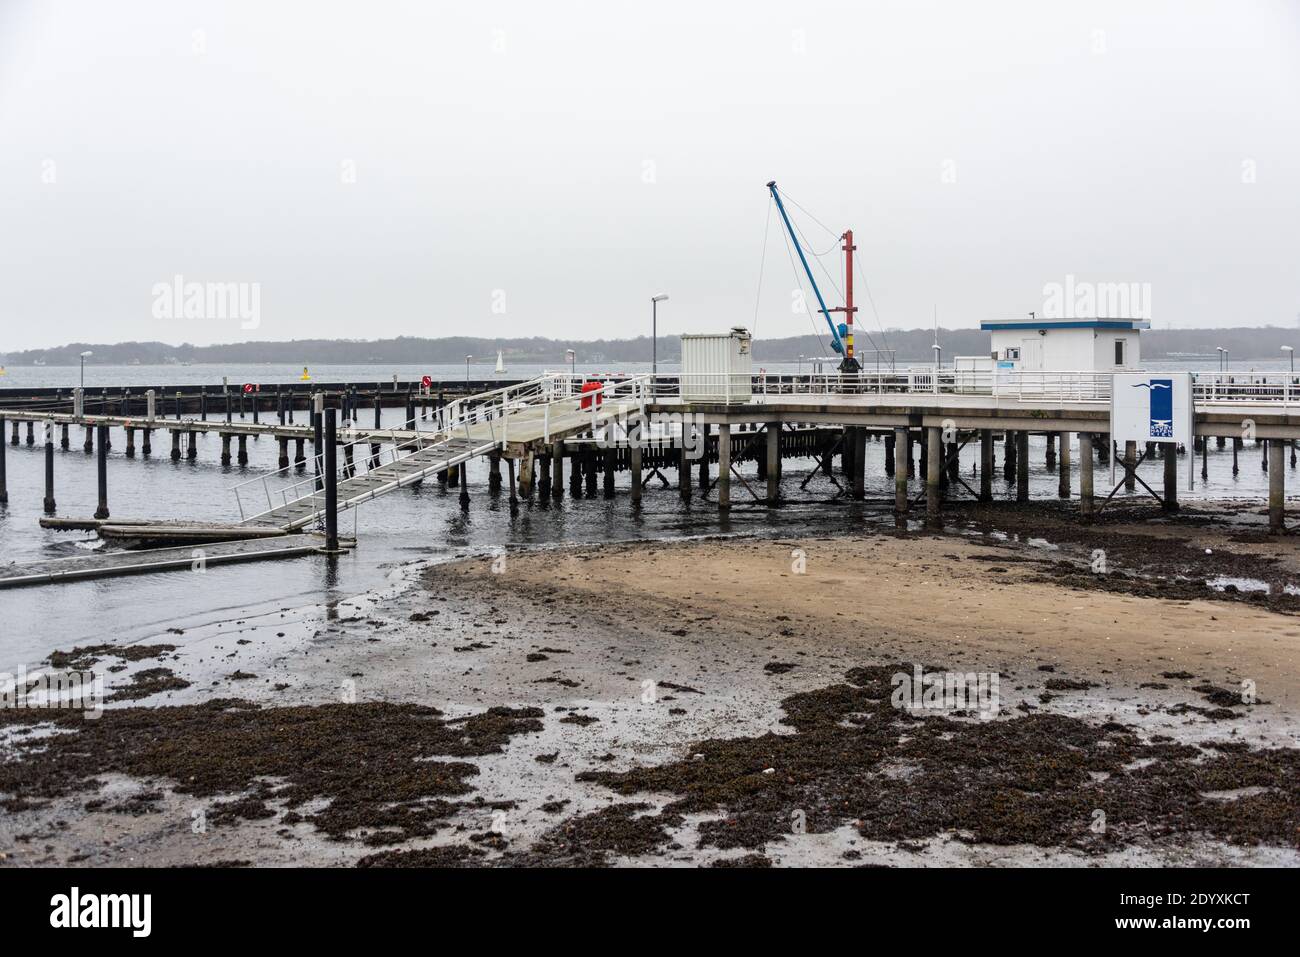 Kiel, 27. Dezember 2020 Von der Nordsee kommend zog Sturmtief Hermine über Schleswig-Holstein hinweg. In Kiel drückte der starke Südwind das Wasser au Stock Photo